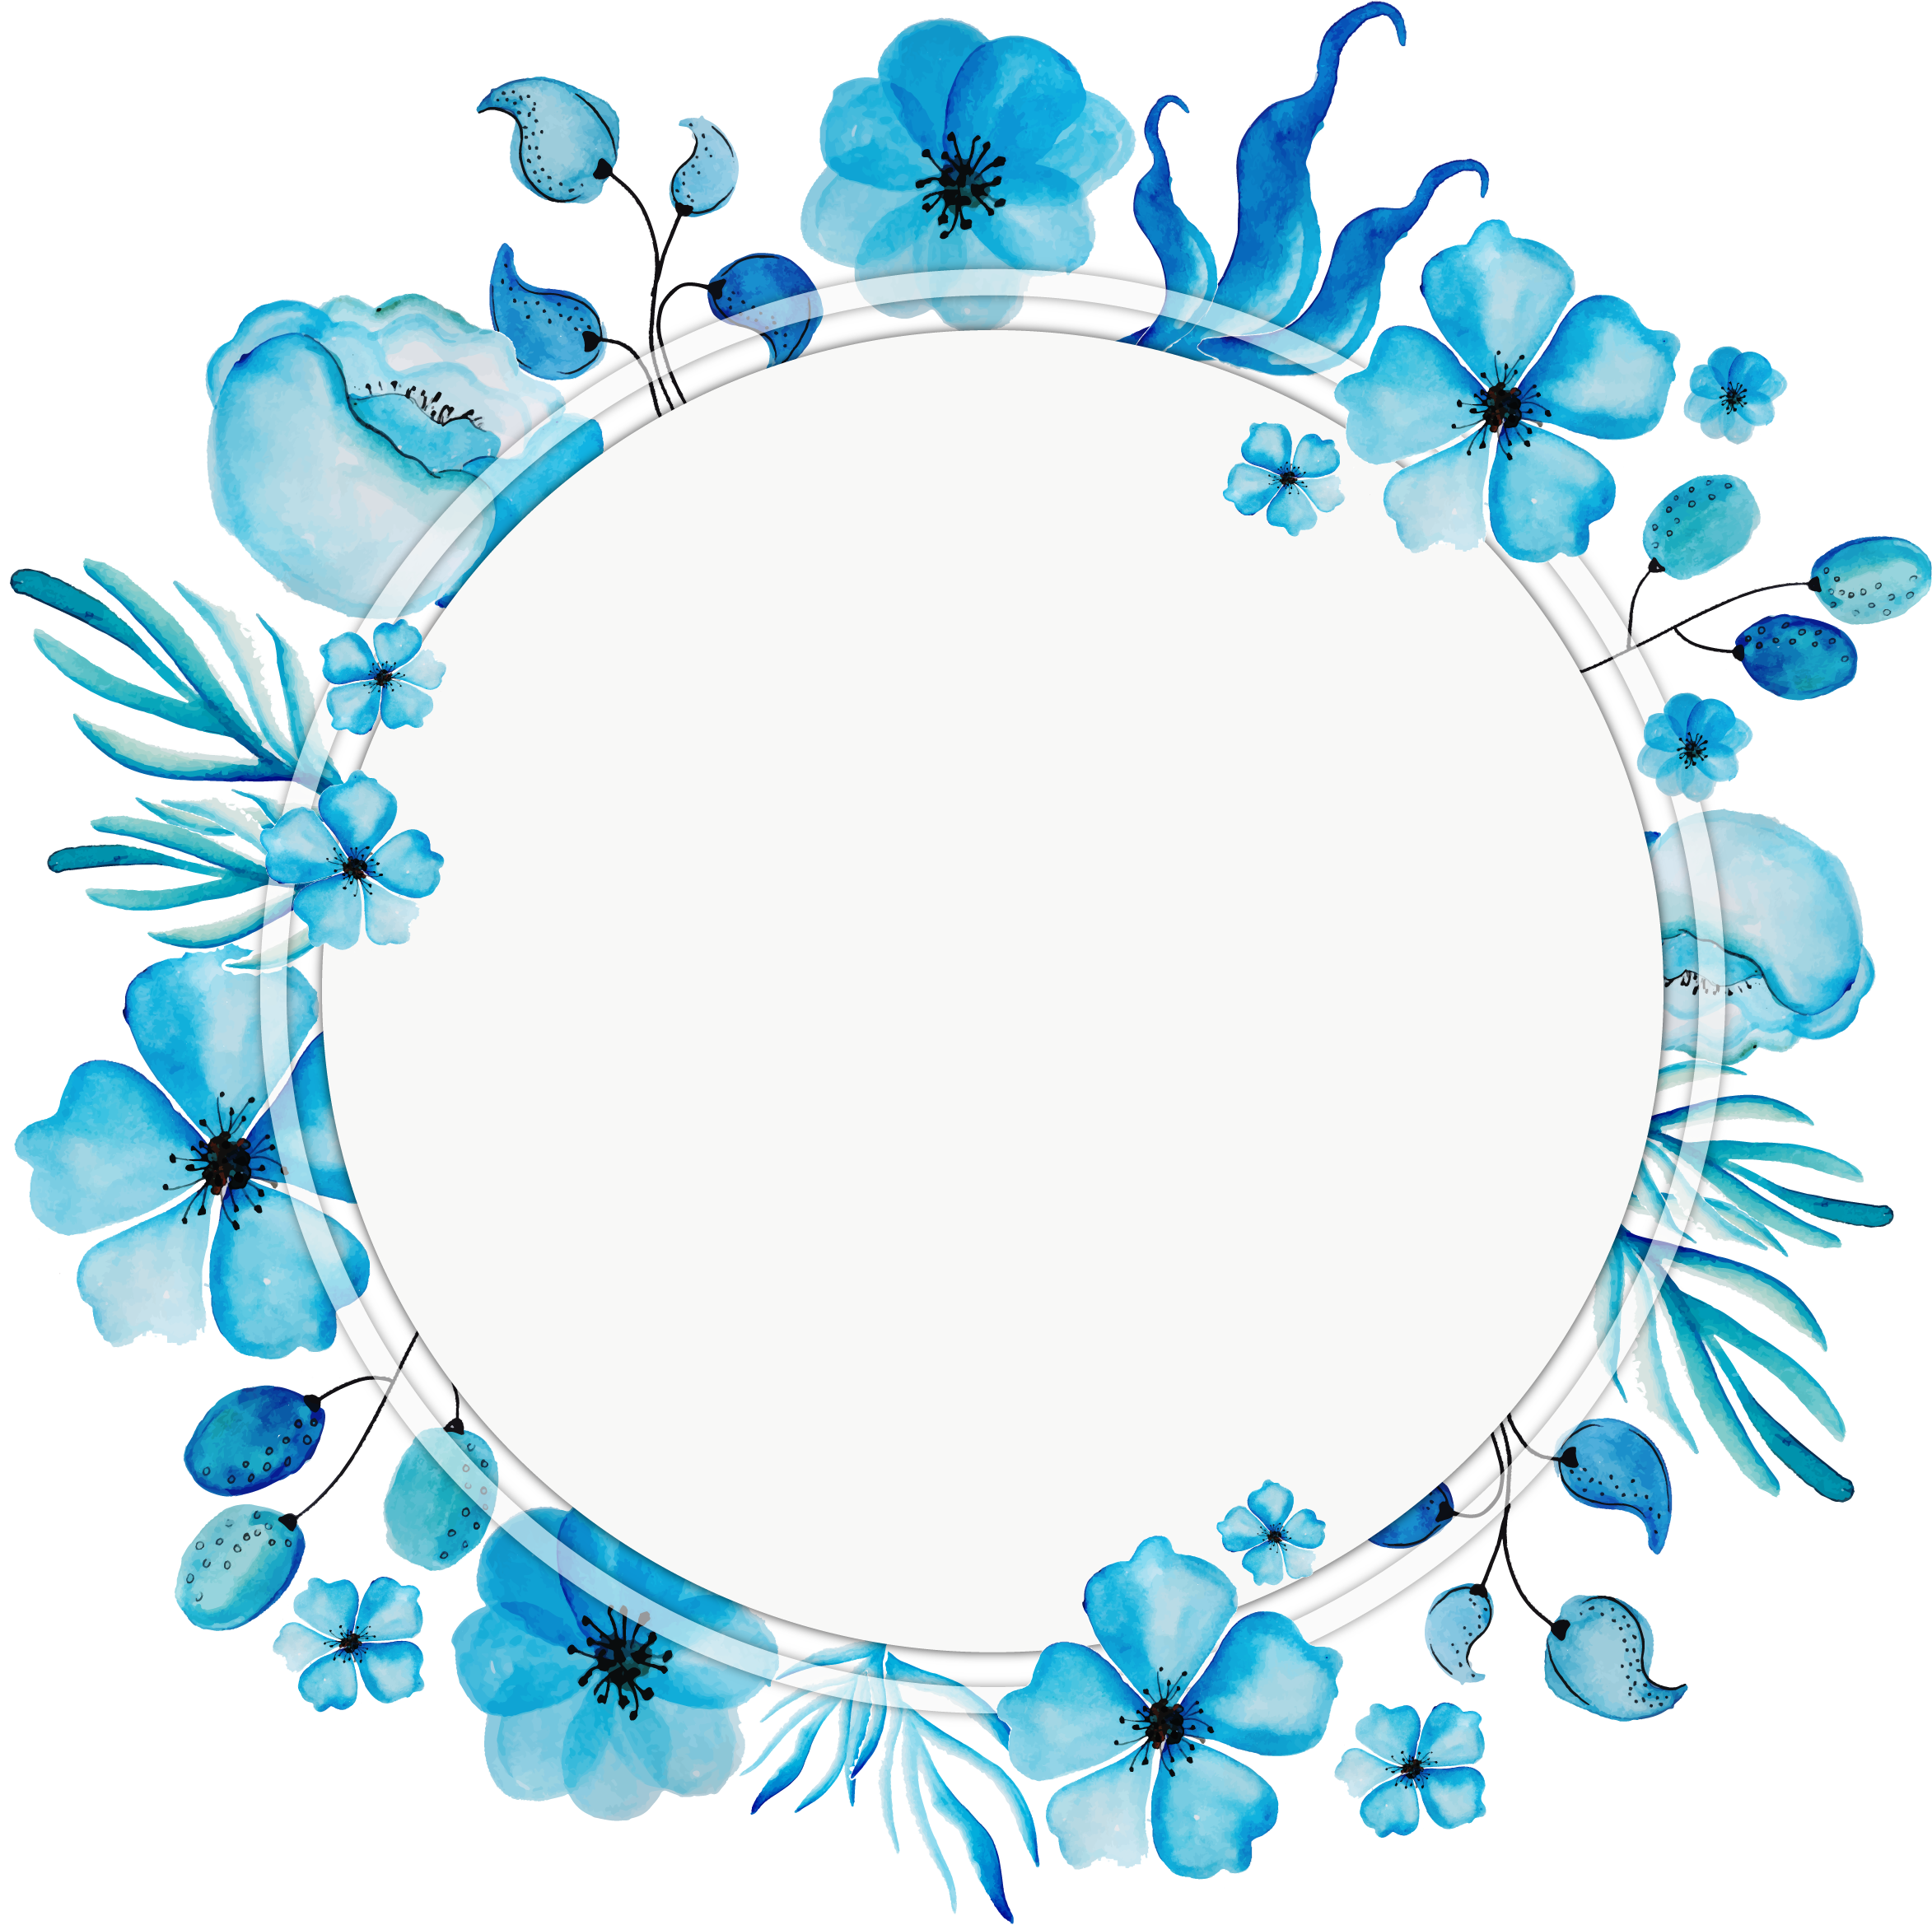 دانلود عکس با کیفیت بالا گل های آبی رایگان دایره ای برای پروفایل دخترونه